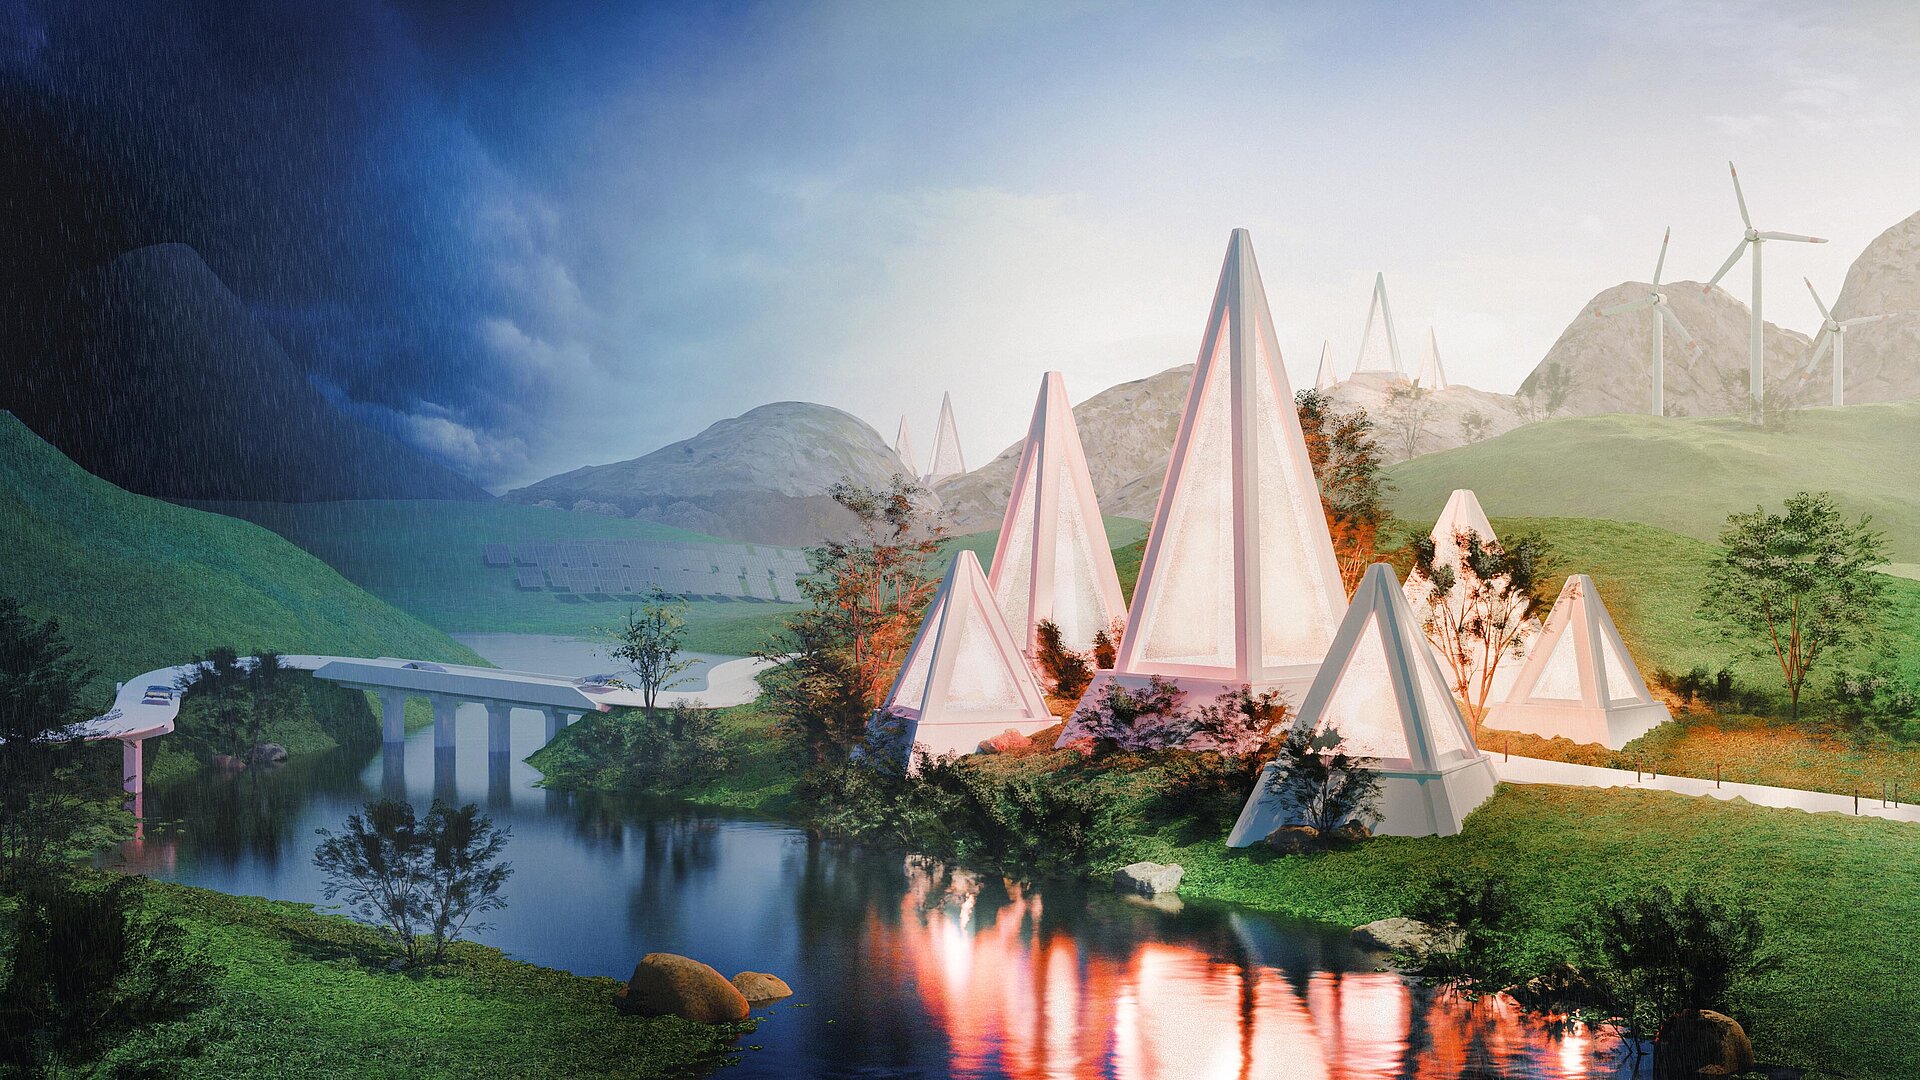 Futuristische 3D-Animation. Leuchtende Pyramiden in einer Landschaft mit Bergen, Fluss. Auf der rechten Seite Sonnenschein, auf der linken Seite Gewitter